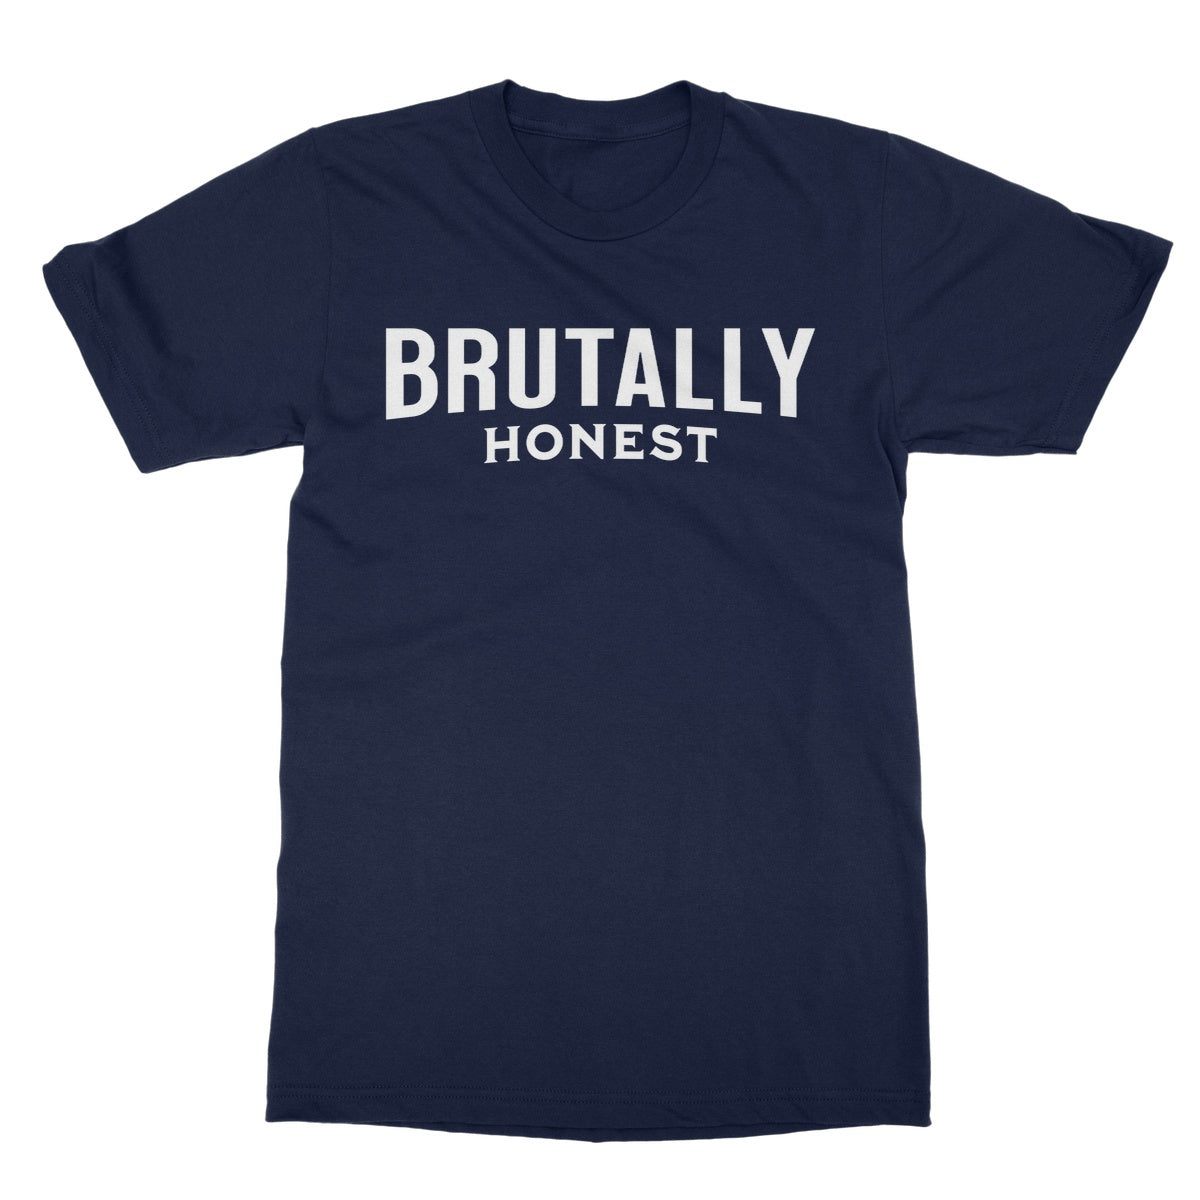 brutally honest t shirt navy